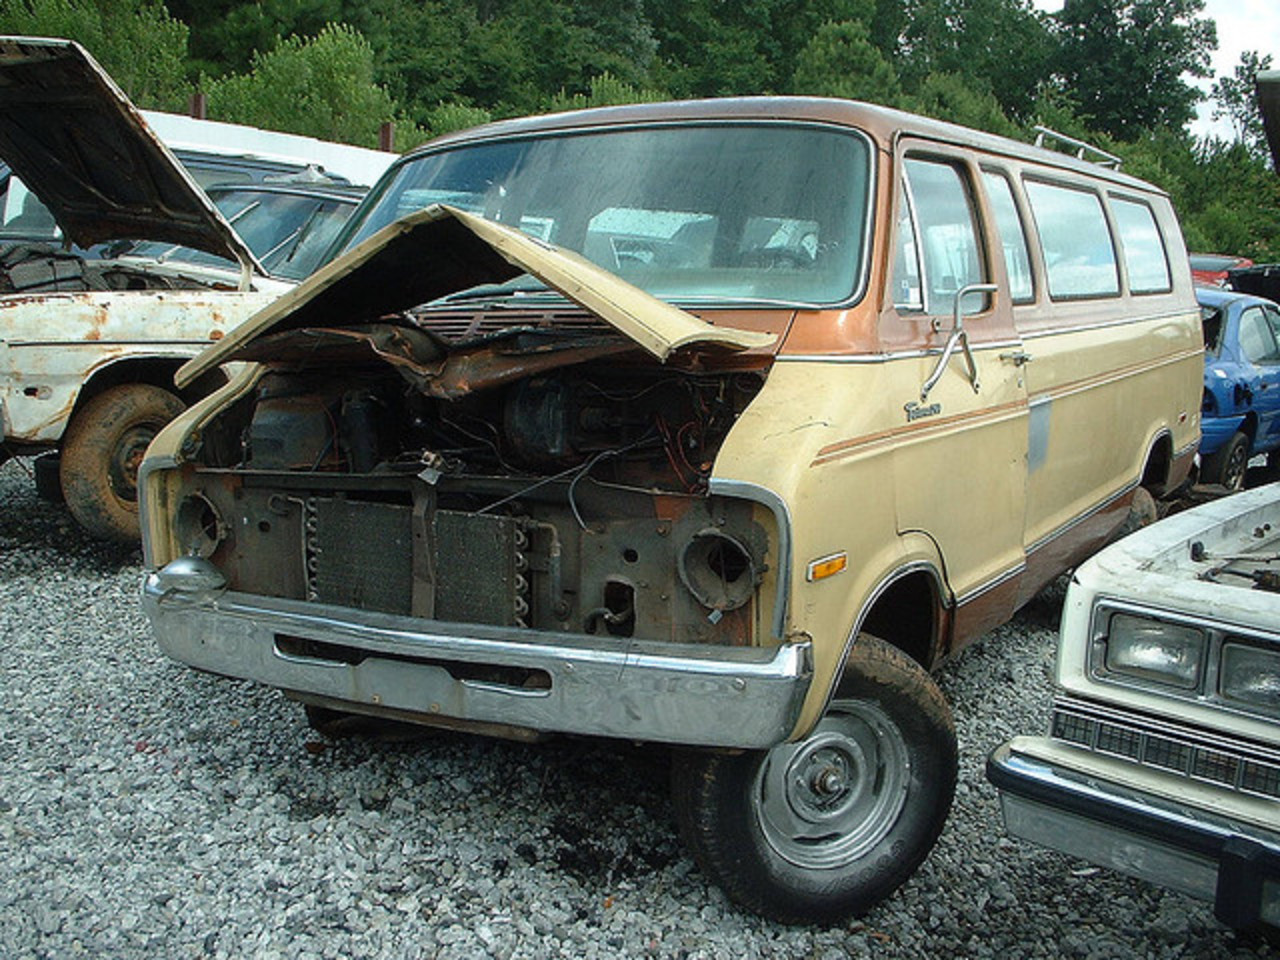 1976 Dodge Tradesman 200 | Flickr - Photo Sharing!